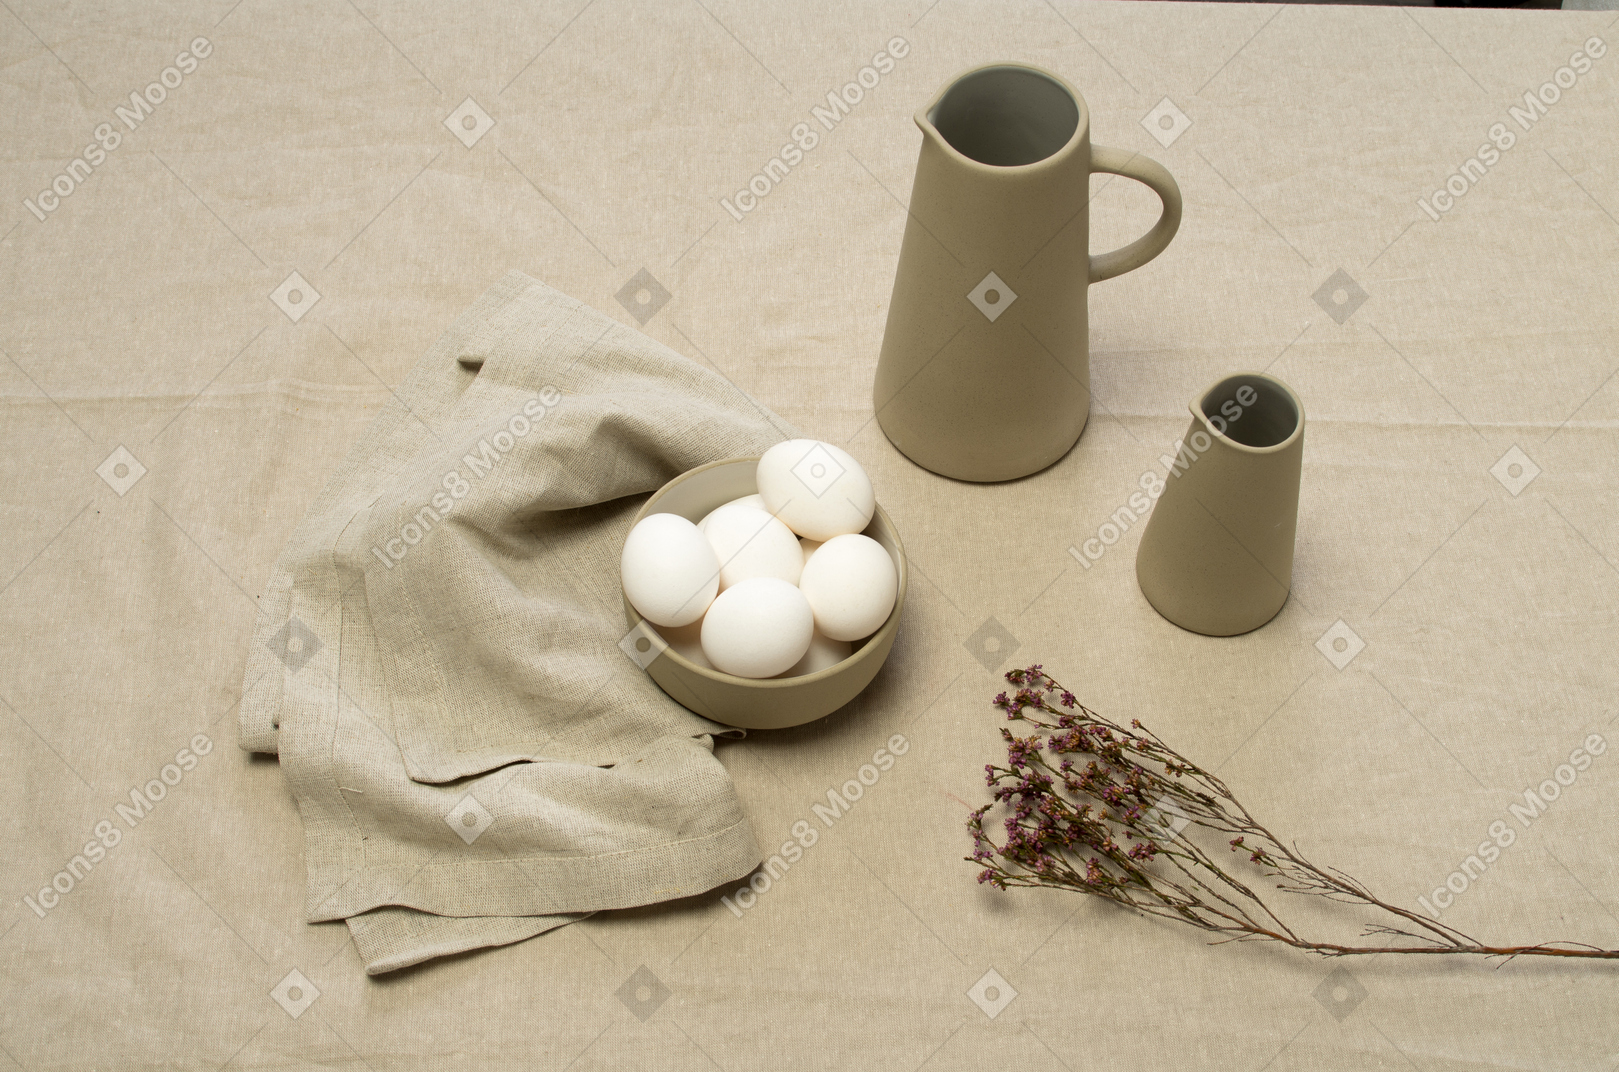 Un bol d'oeufs de poule et des pots sur une nappe grise